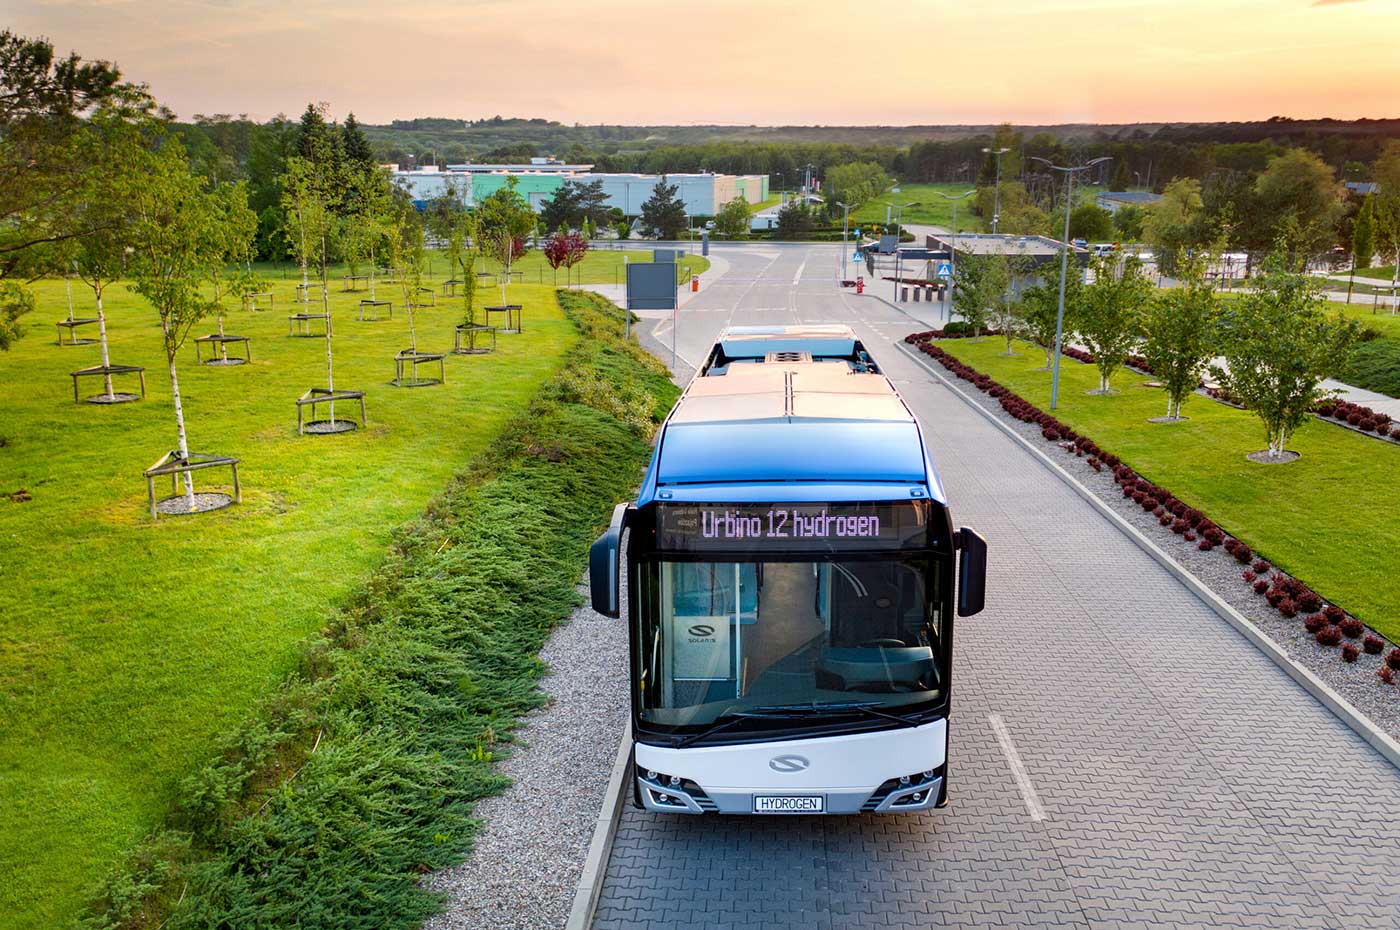 Une première flotte de bus à hydrogène pour la Slovaquie